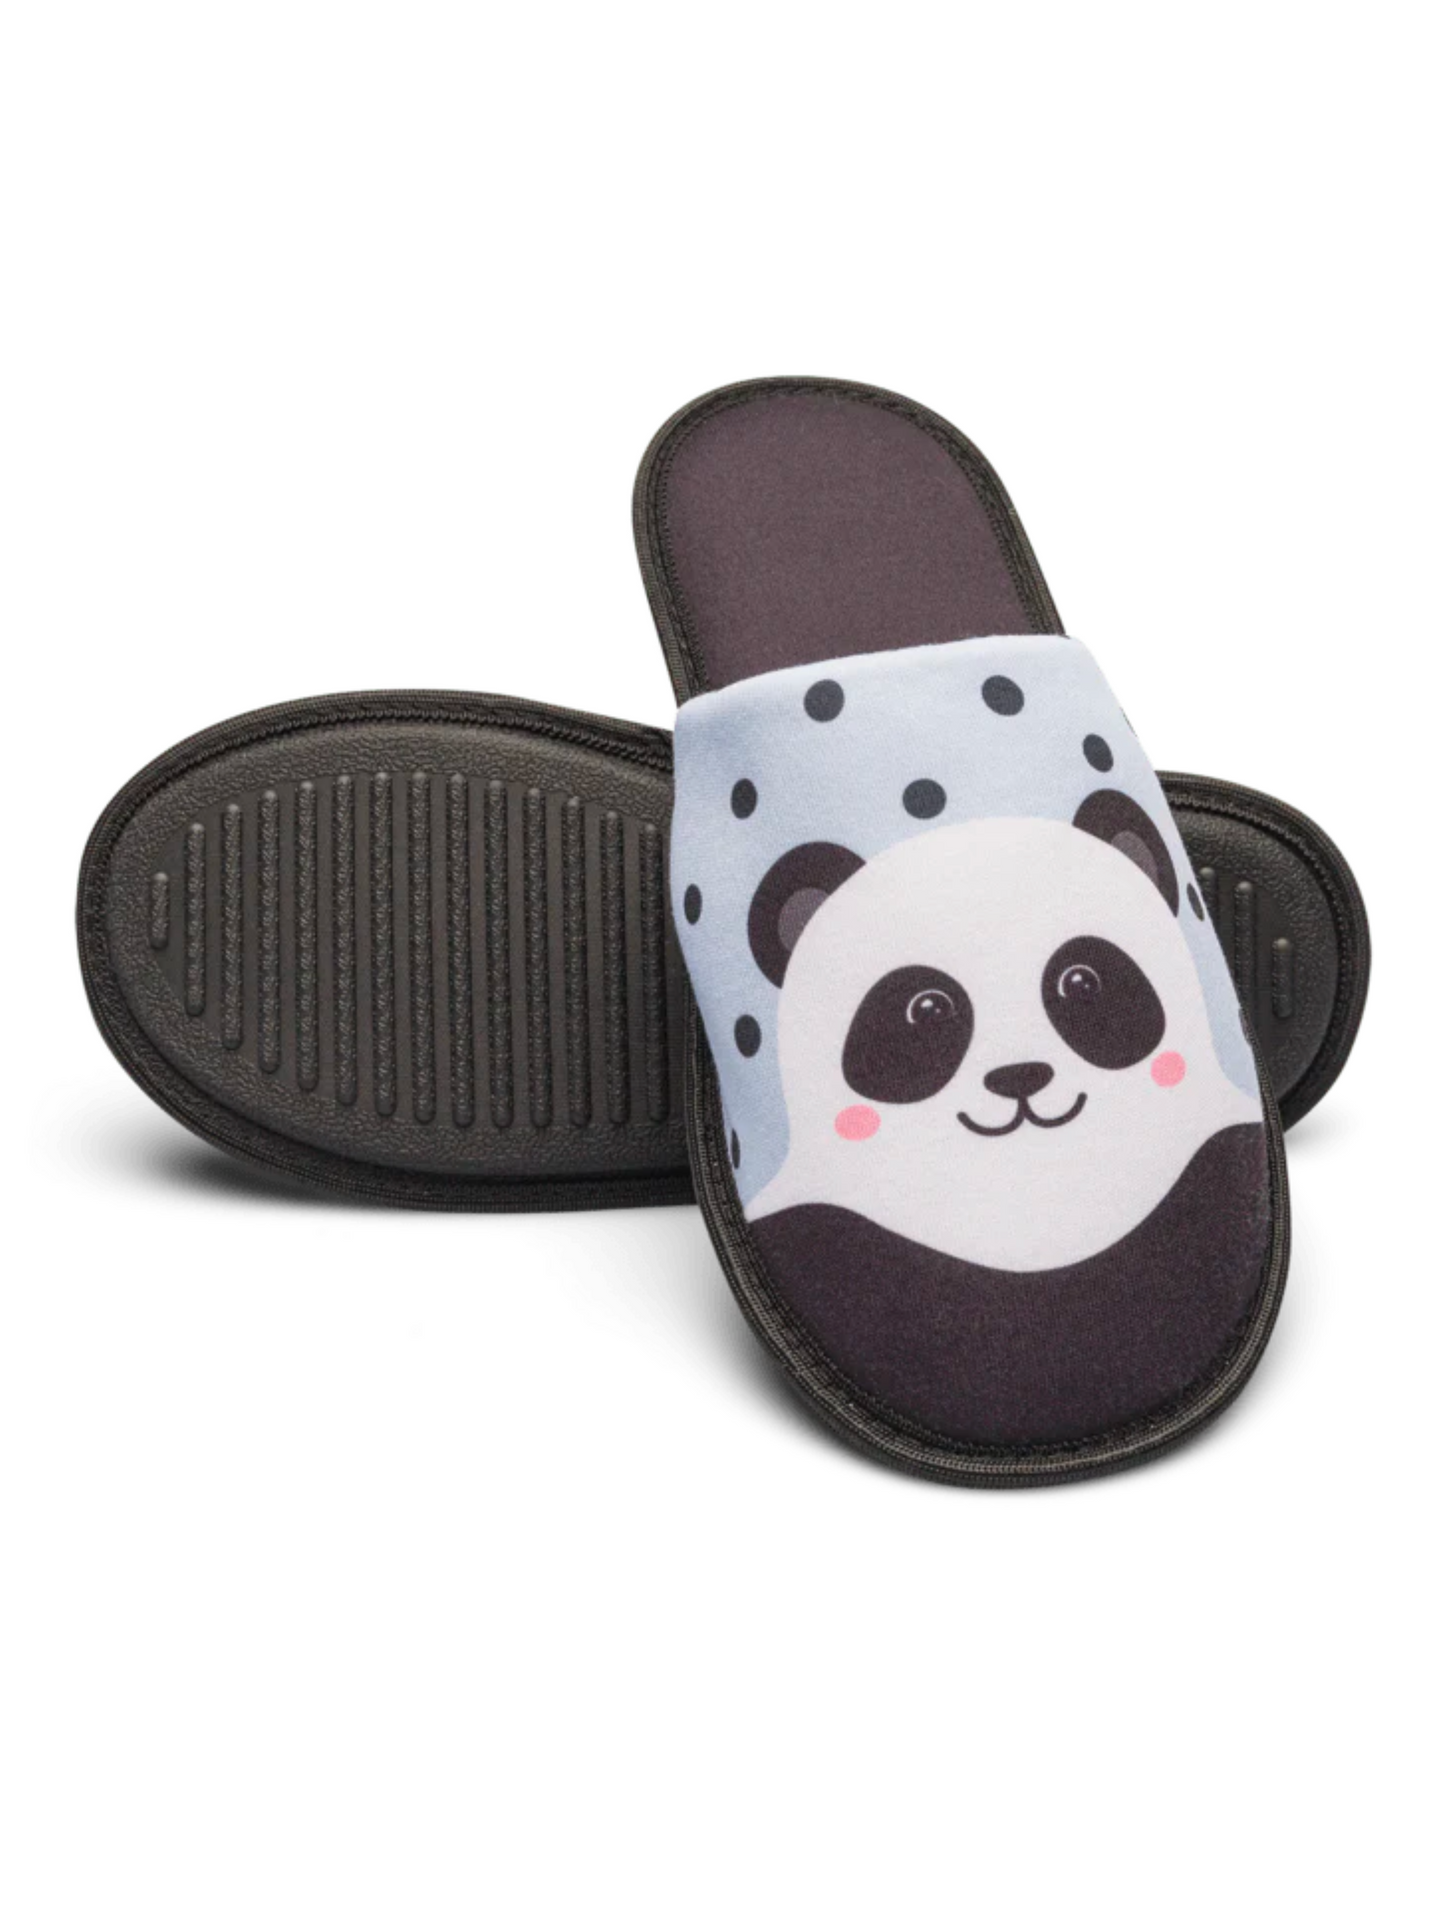 Pantoufles Panda joyeux